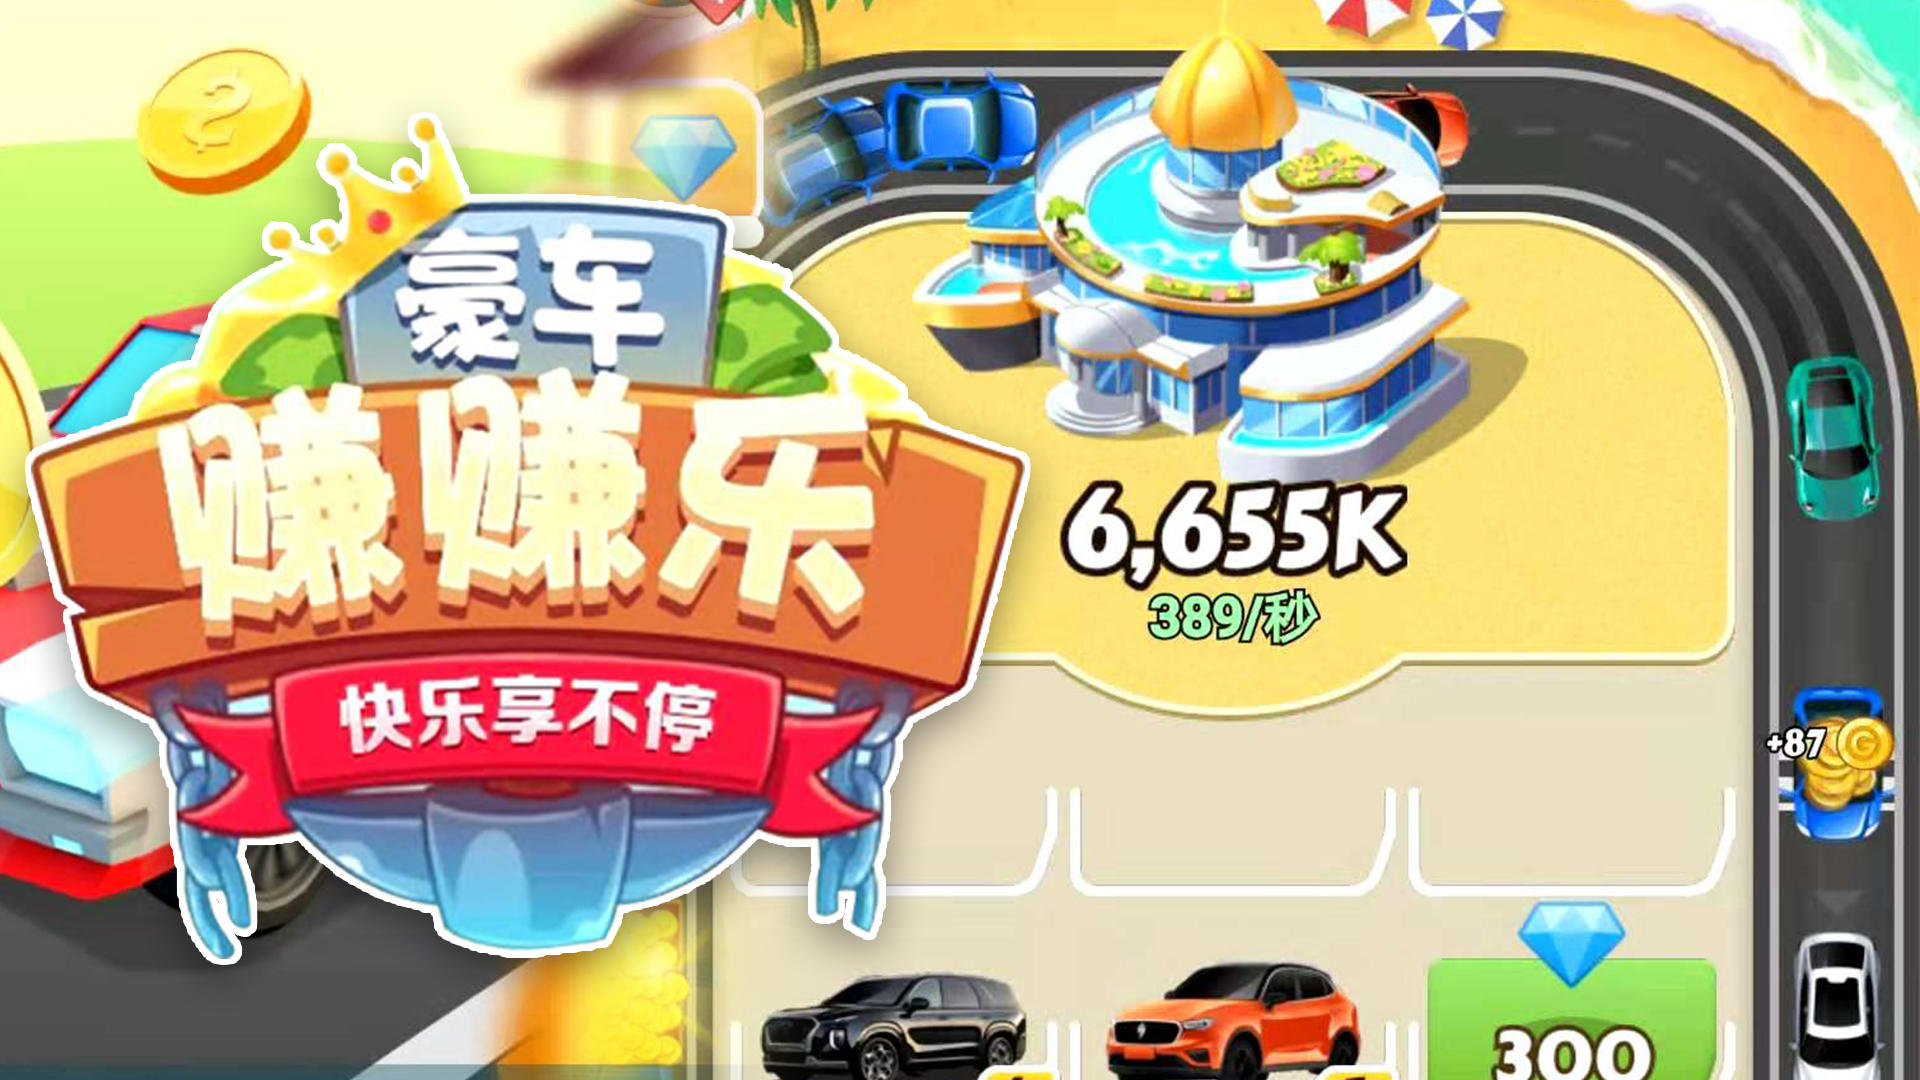 Banner of Ganhe dinheiro com carros de luxo 12.0